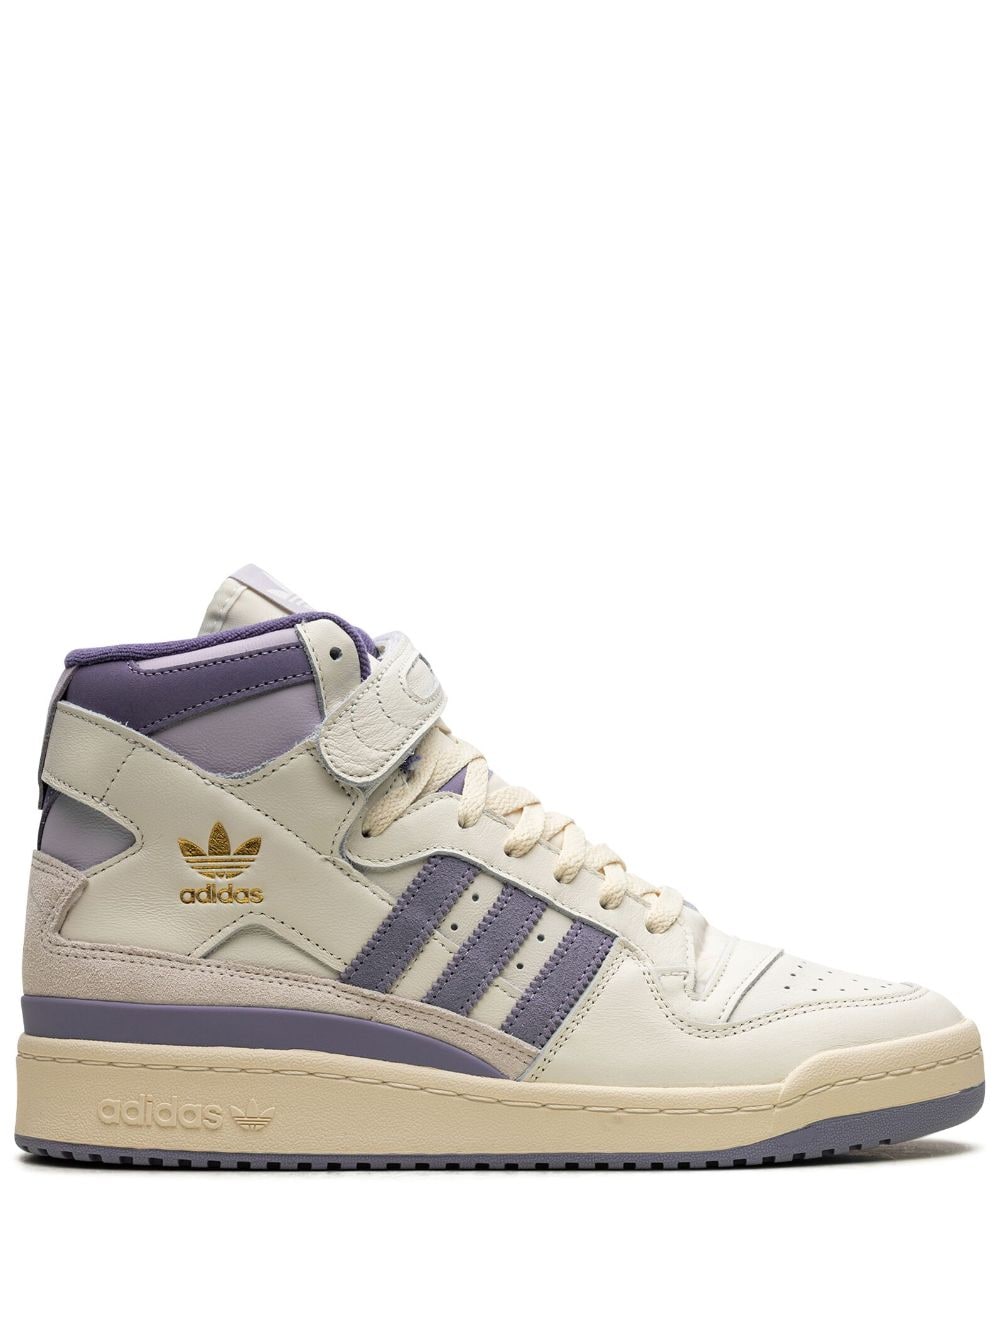 adidas Forum 84 High "Off White/Silver Violet" sneakers - Neutrals von adidas